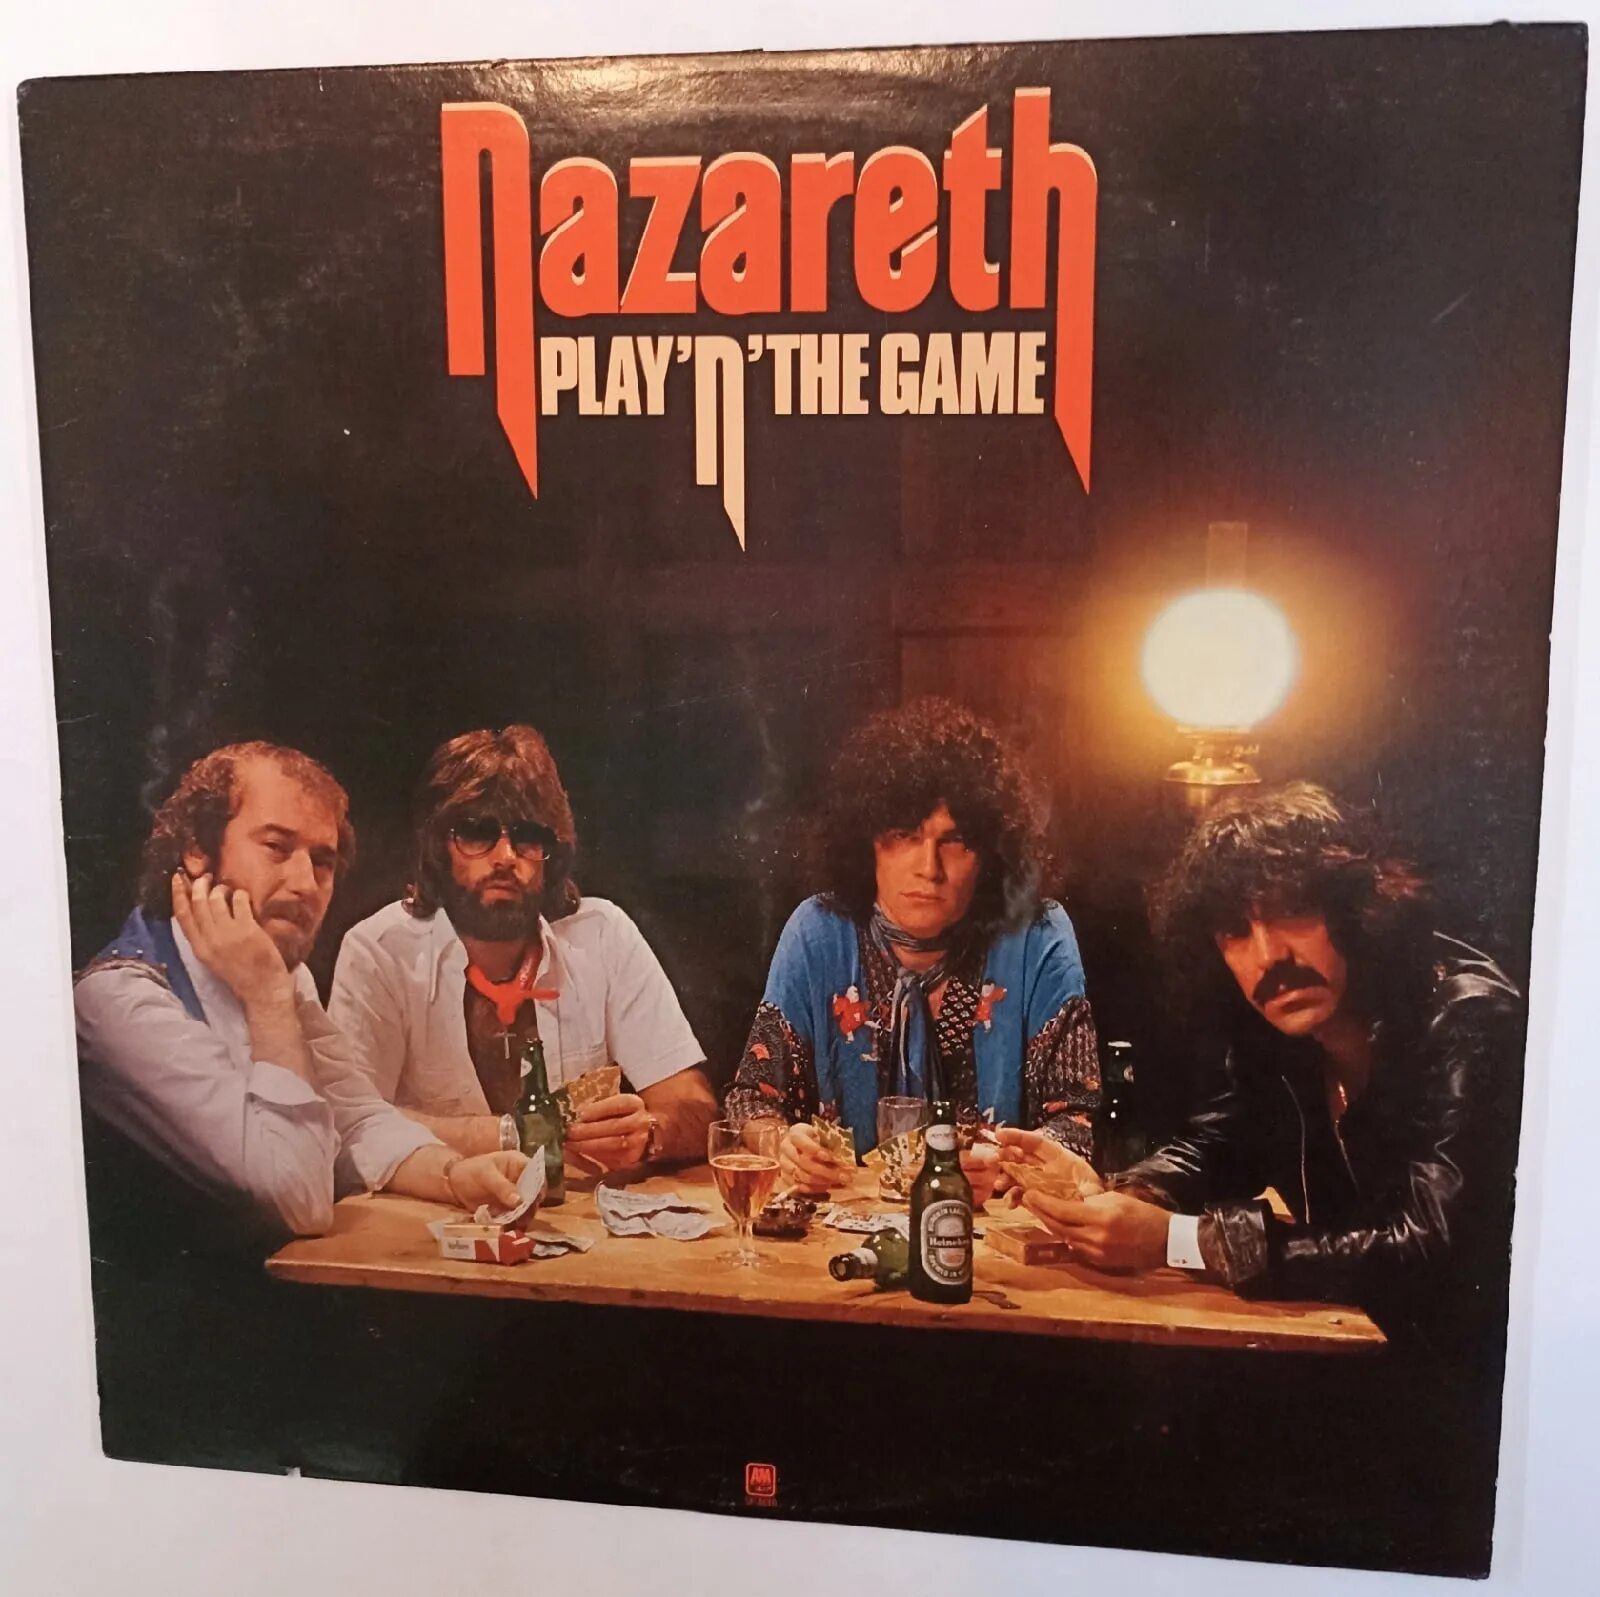 Группа Nazareth альбомы 1976. Nazareth Play n the game 1976. Nazareth "Play 'n' the game". Nazareth Play n game 1976 LP. Nazareth nazareth треки